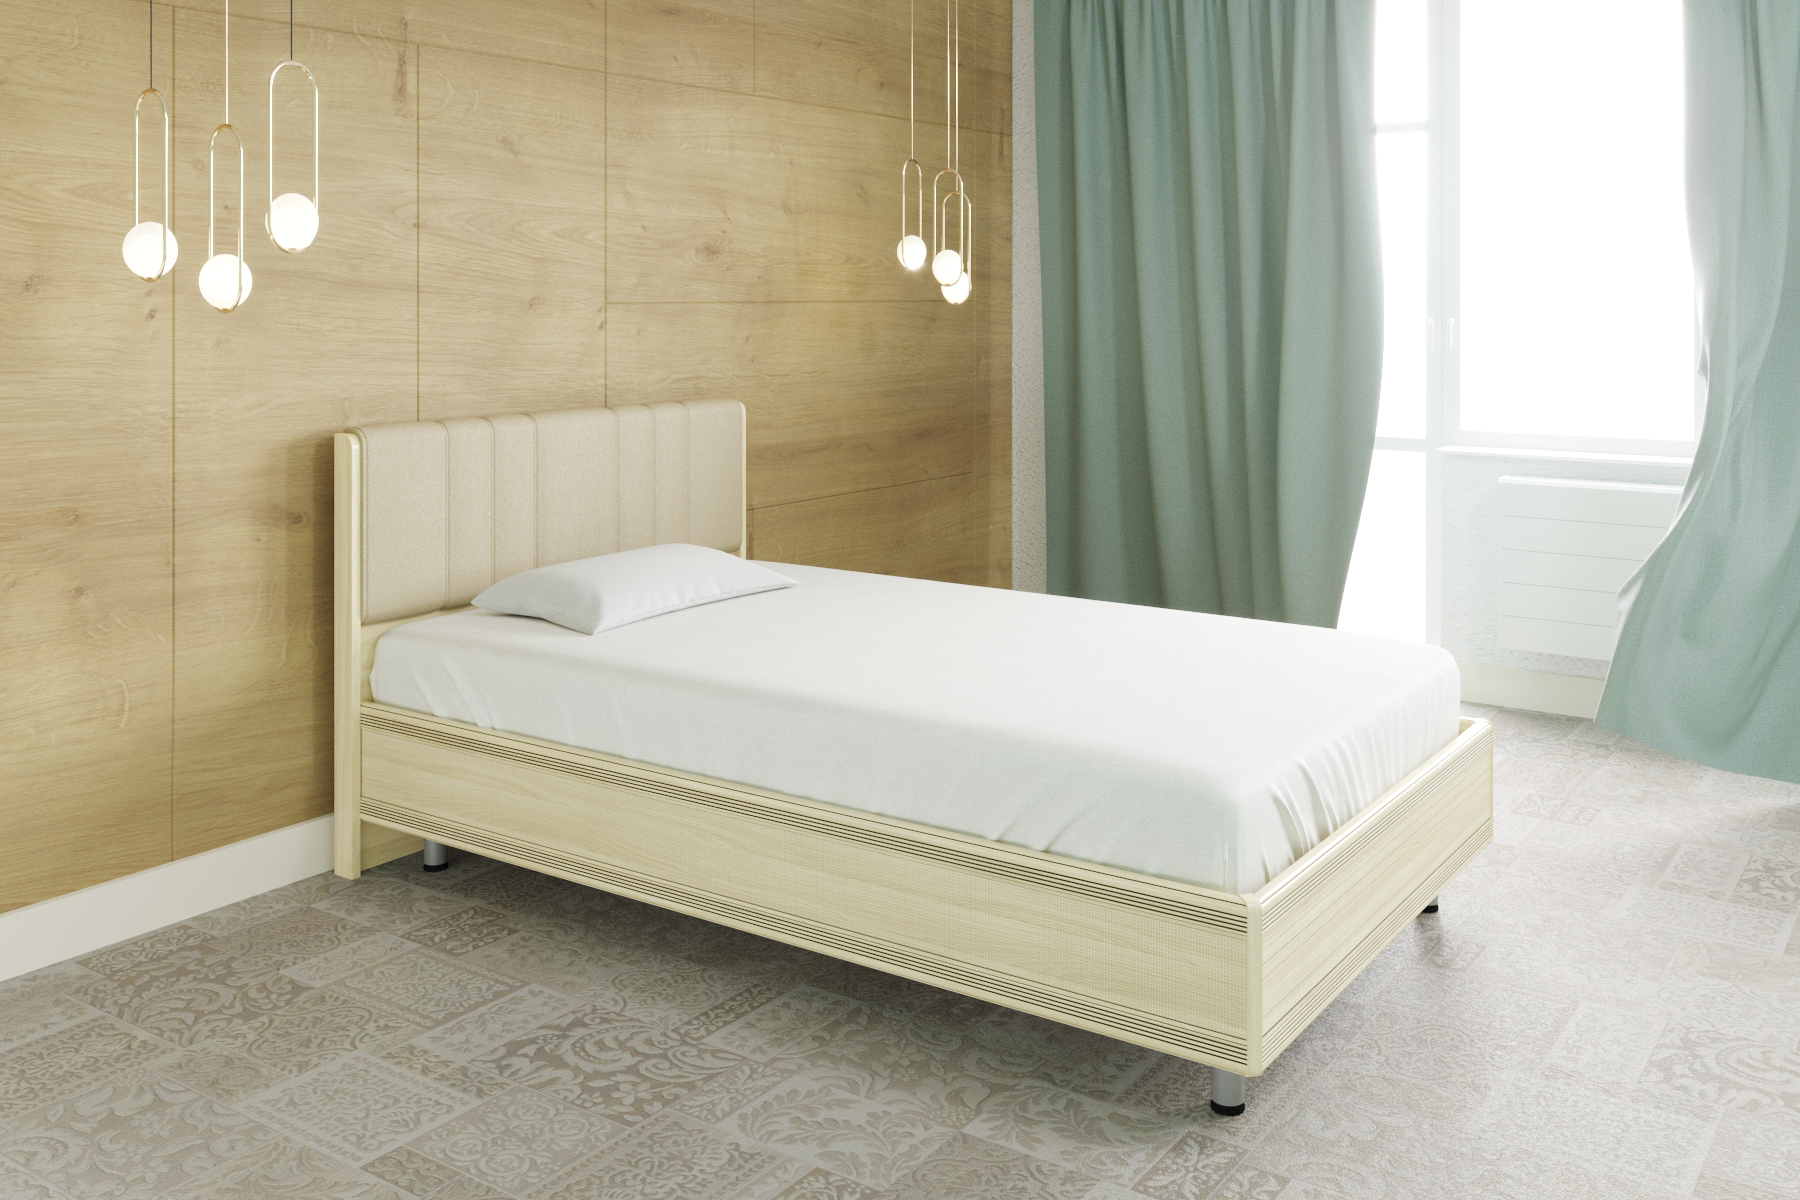 Двуспальная кровать (1,8x2,0) КР-2014 – изображение 1